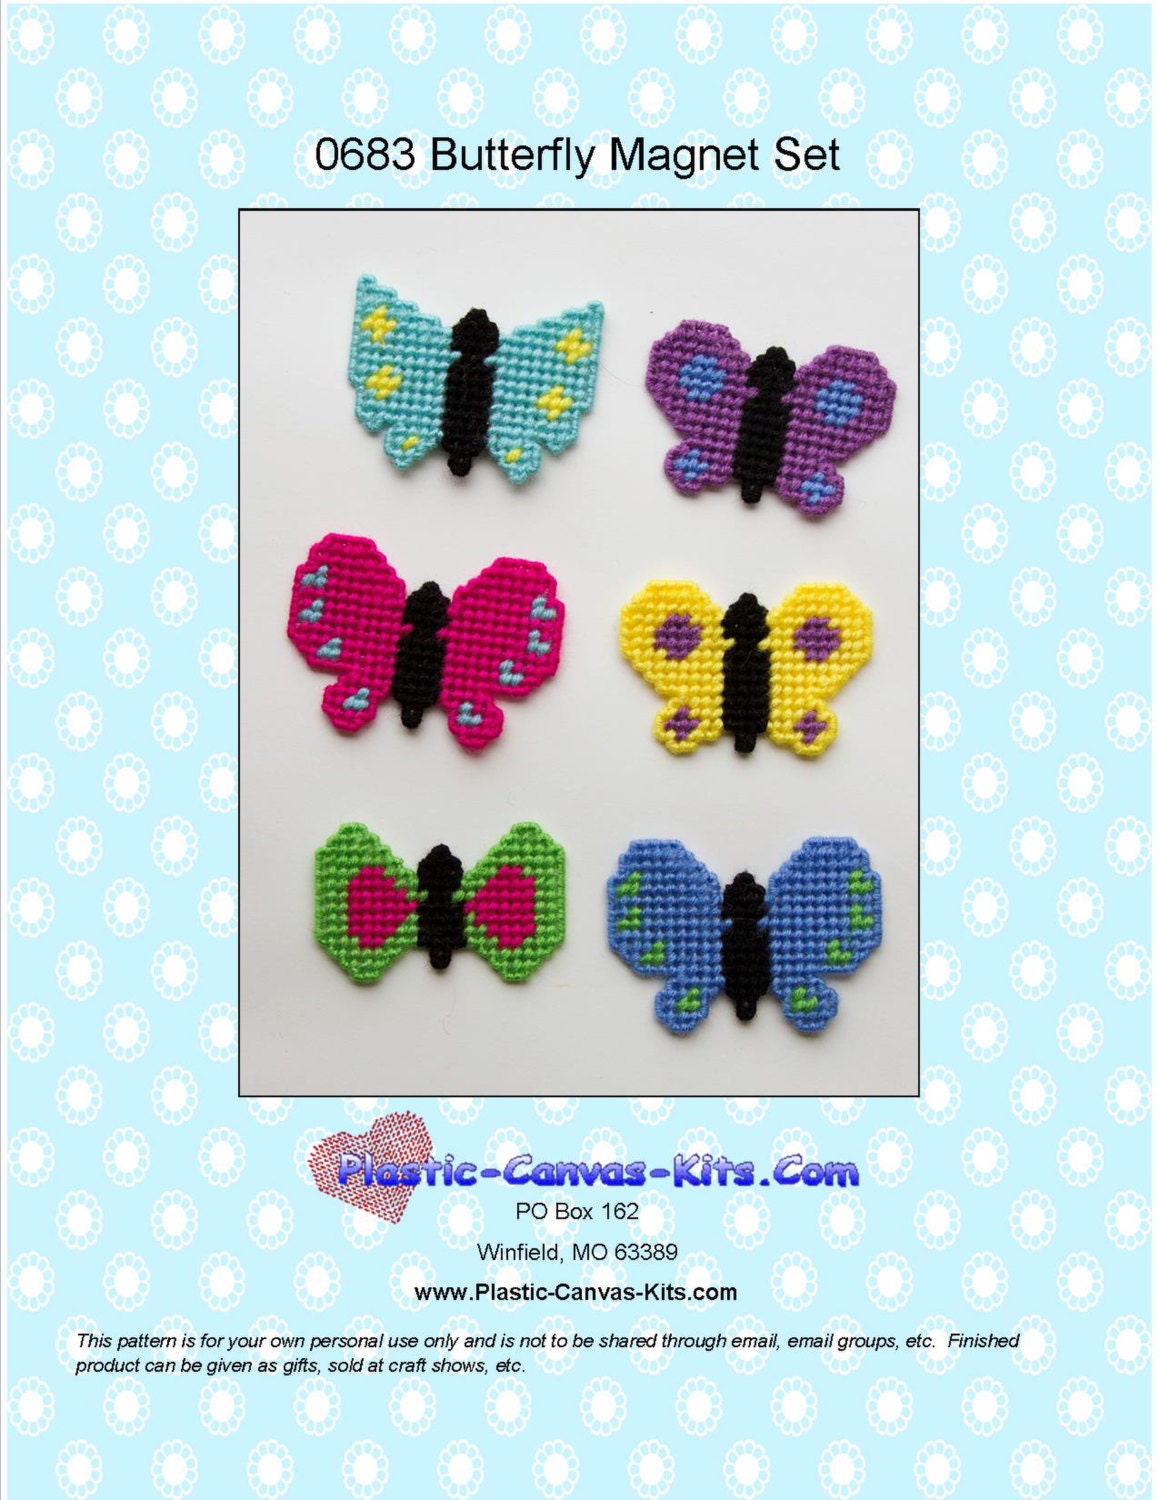 12 blue plastic craft butterflies-pf751566bl